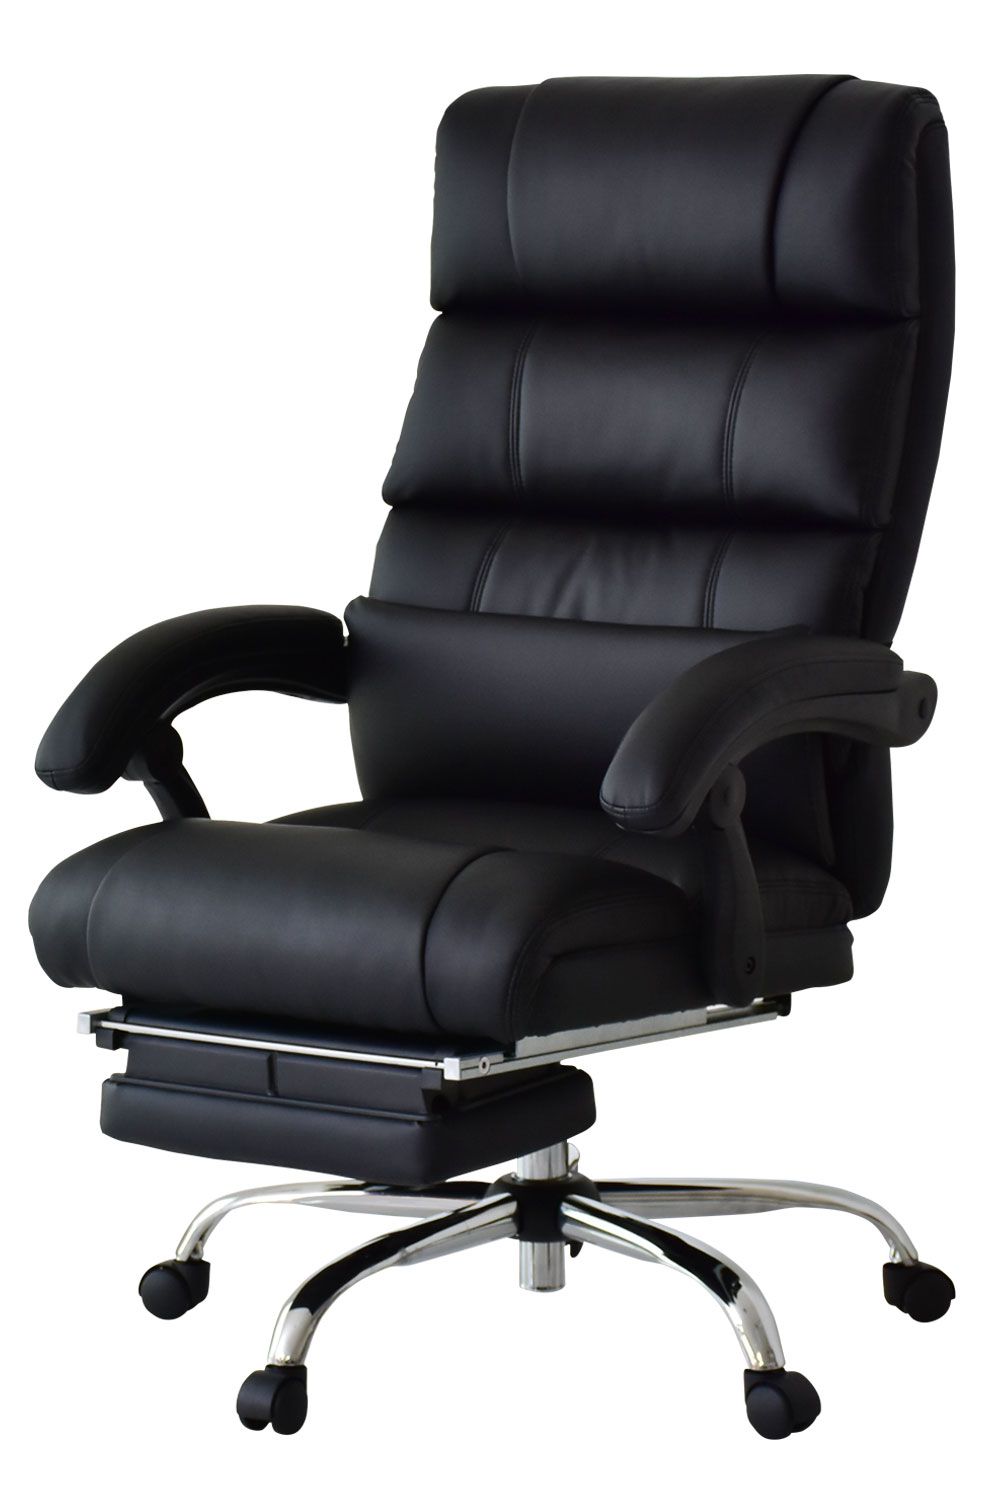 チェア オフィスチェア DORIS 椅子 イス いす キャスター付き パソコンチェア チェアー リクライニング シュトゥール 事務所 オフィス